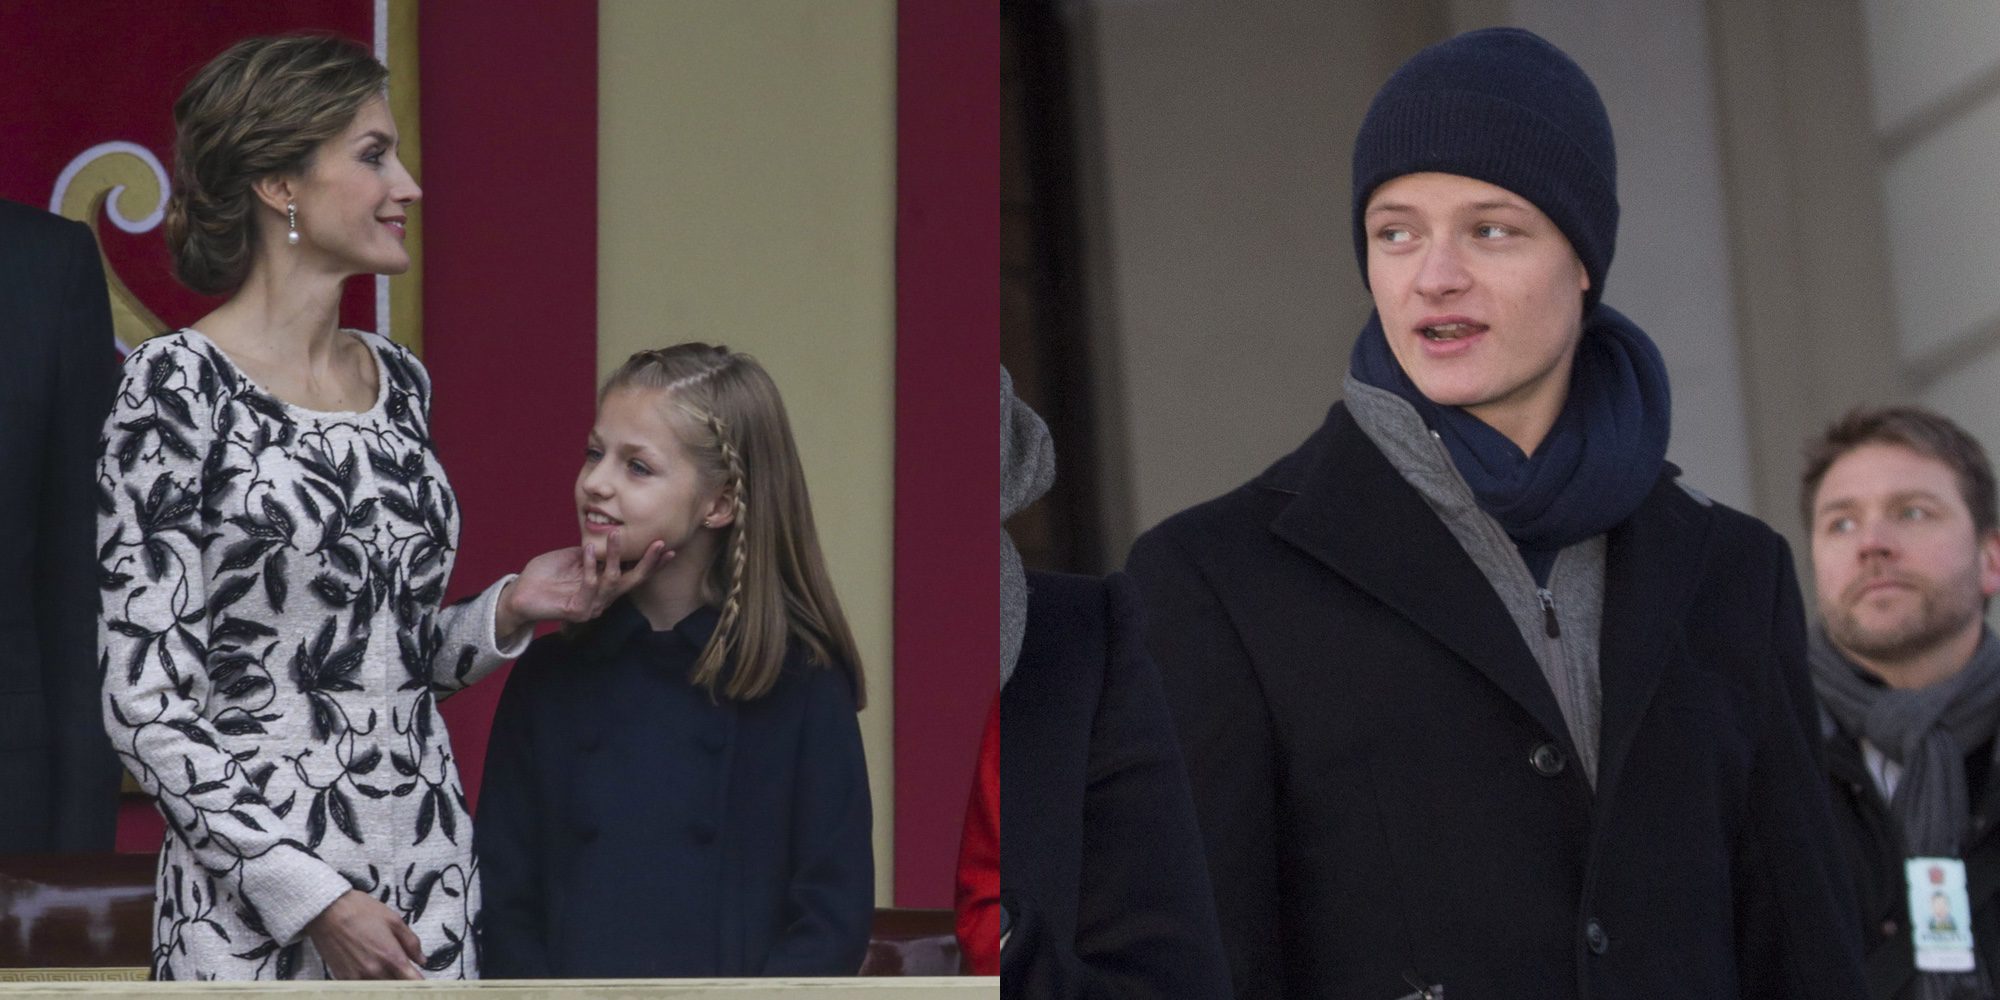 Realeza contra las cuerdas: ataques contra la Reina Letizia, la Princesa Leonor y Marius Borg